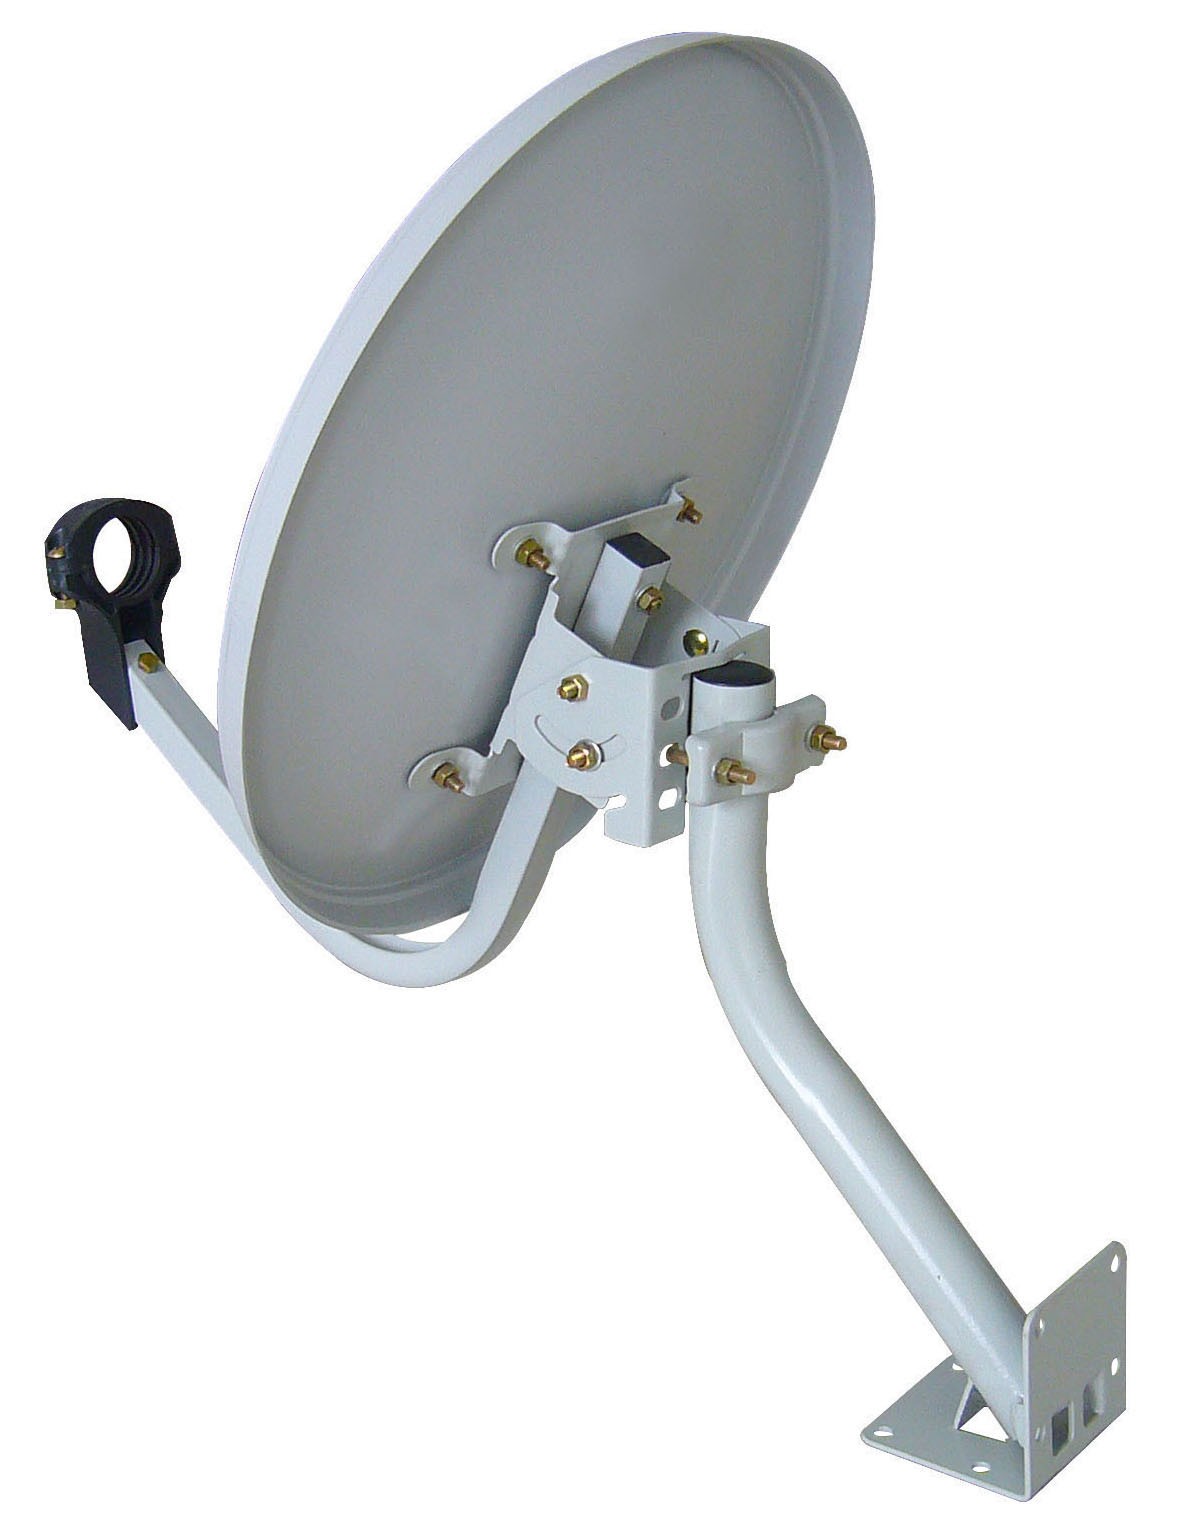 Antenne parabolique en bande Ku de 45 cm